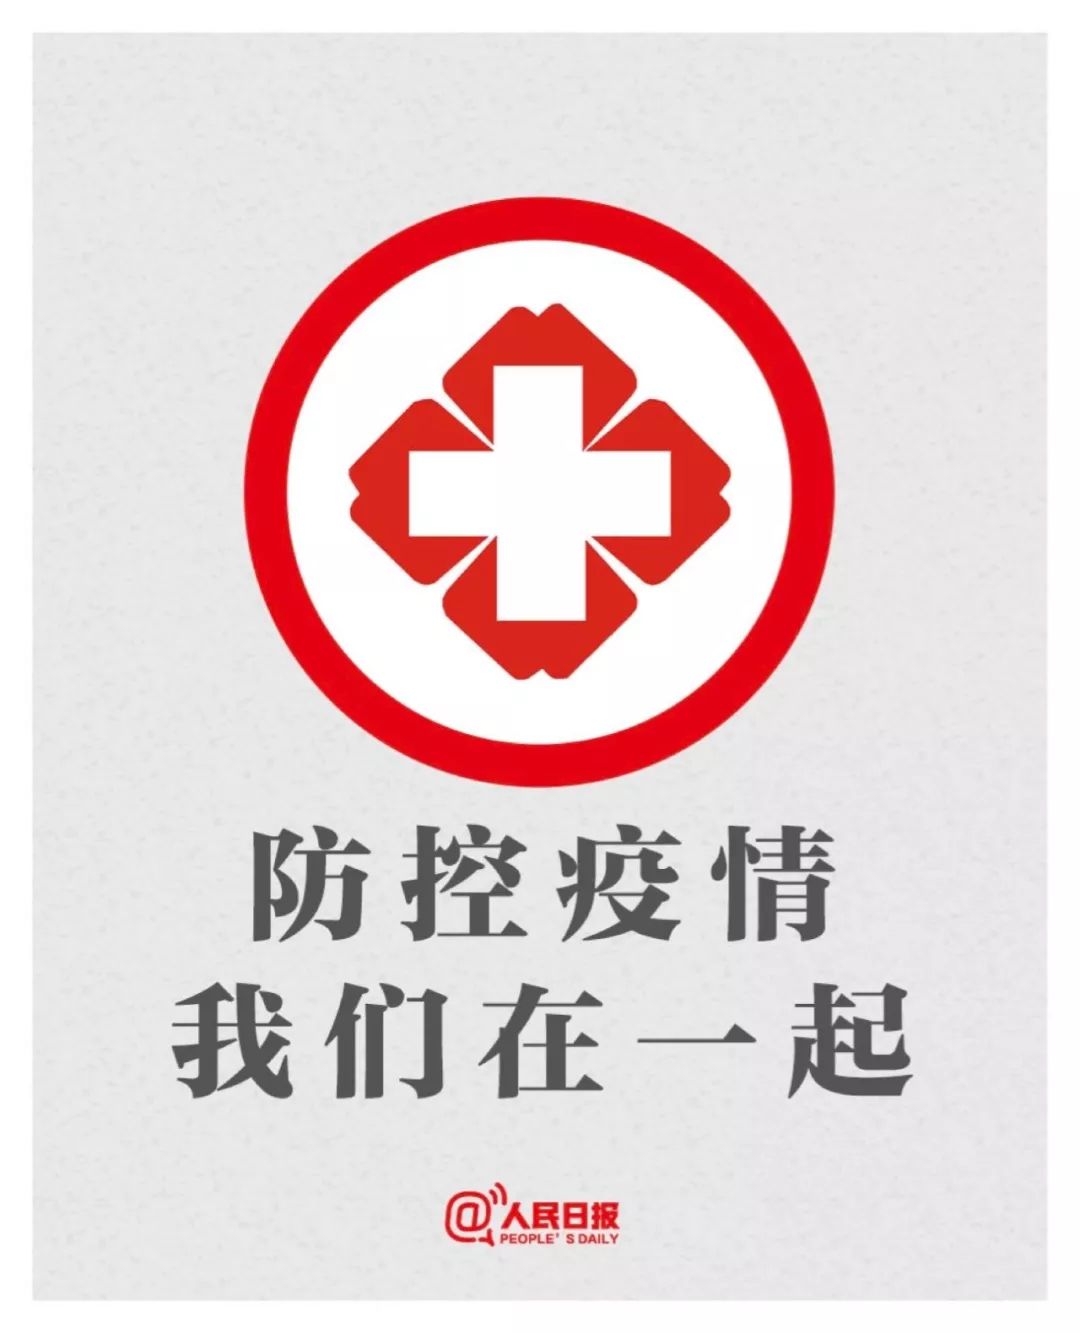 和南京工业大学一同防护!新型肺炎防护指南